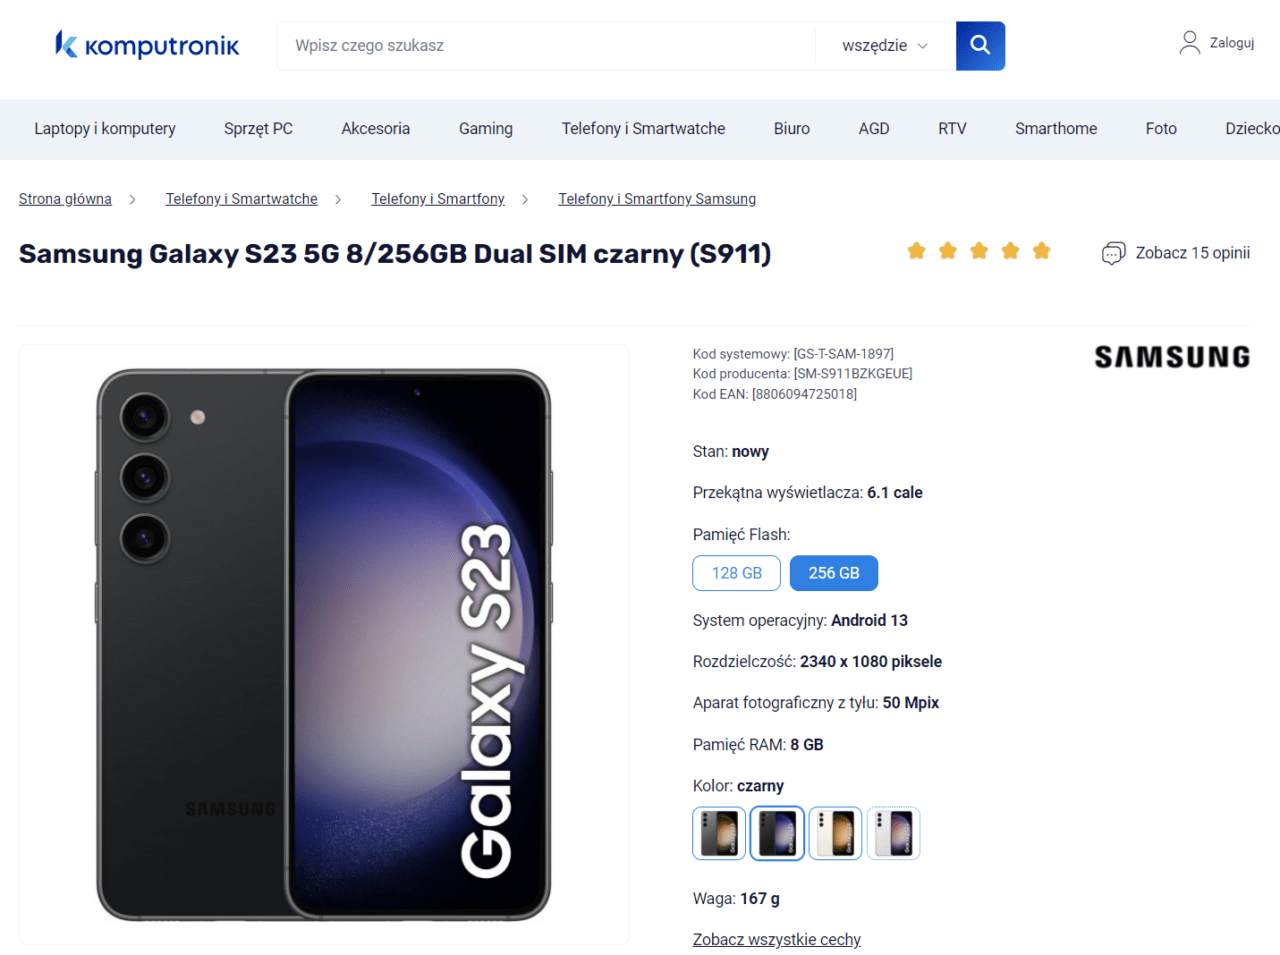 Zdjęcie smartfonu Samsung Galaxy S23 w kolorze czarnym, przedstawiające przód i tył urządzenia, z logo producenta i nazwą modelu widocznymi na ekranie i tylnej obudowie. Strona internetowa sklepu Komputronik z opisem produktu i specyfikacją obok zdjęcia.